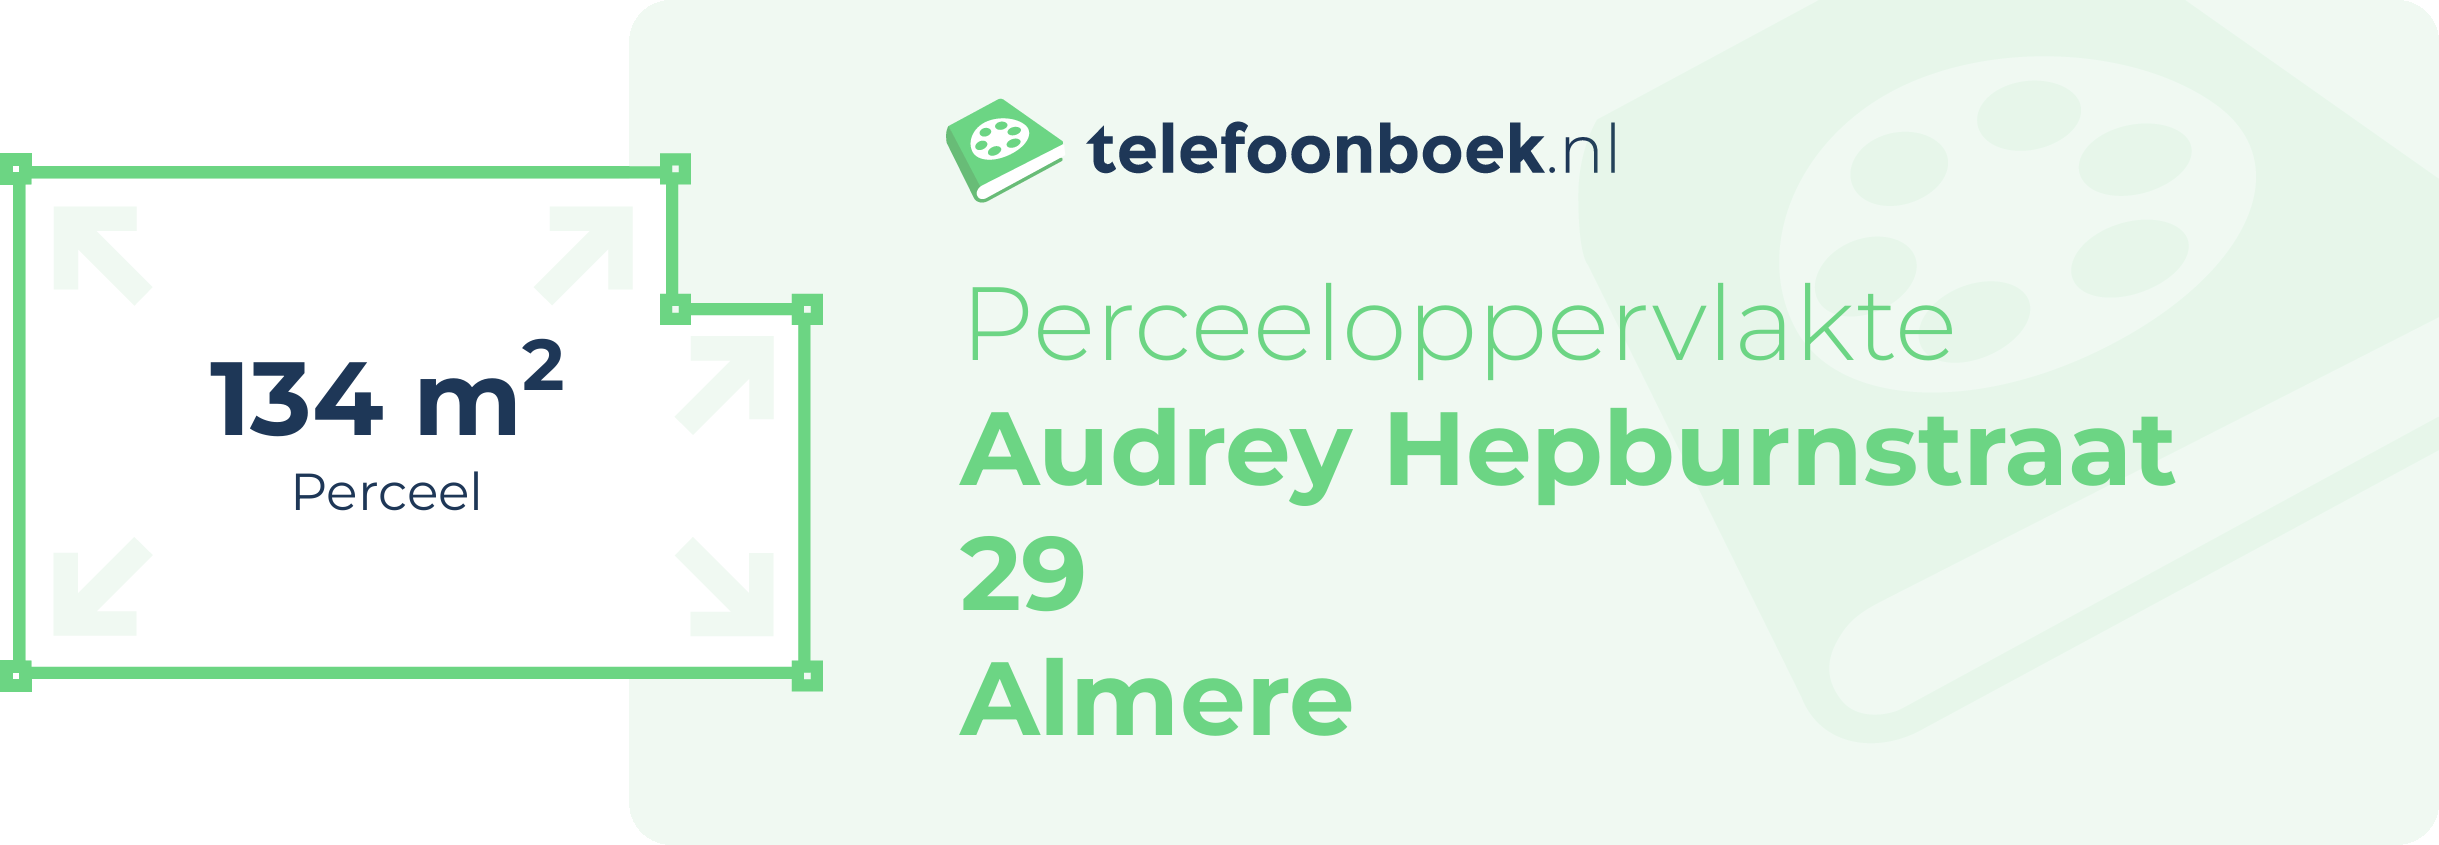 Perceeloppervlakte Audrey Hepburnstraat 29 Almere